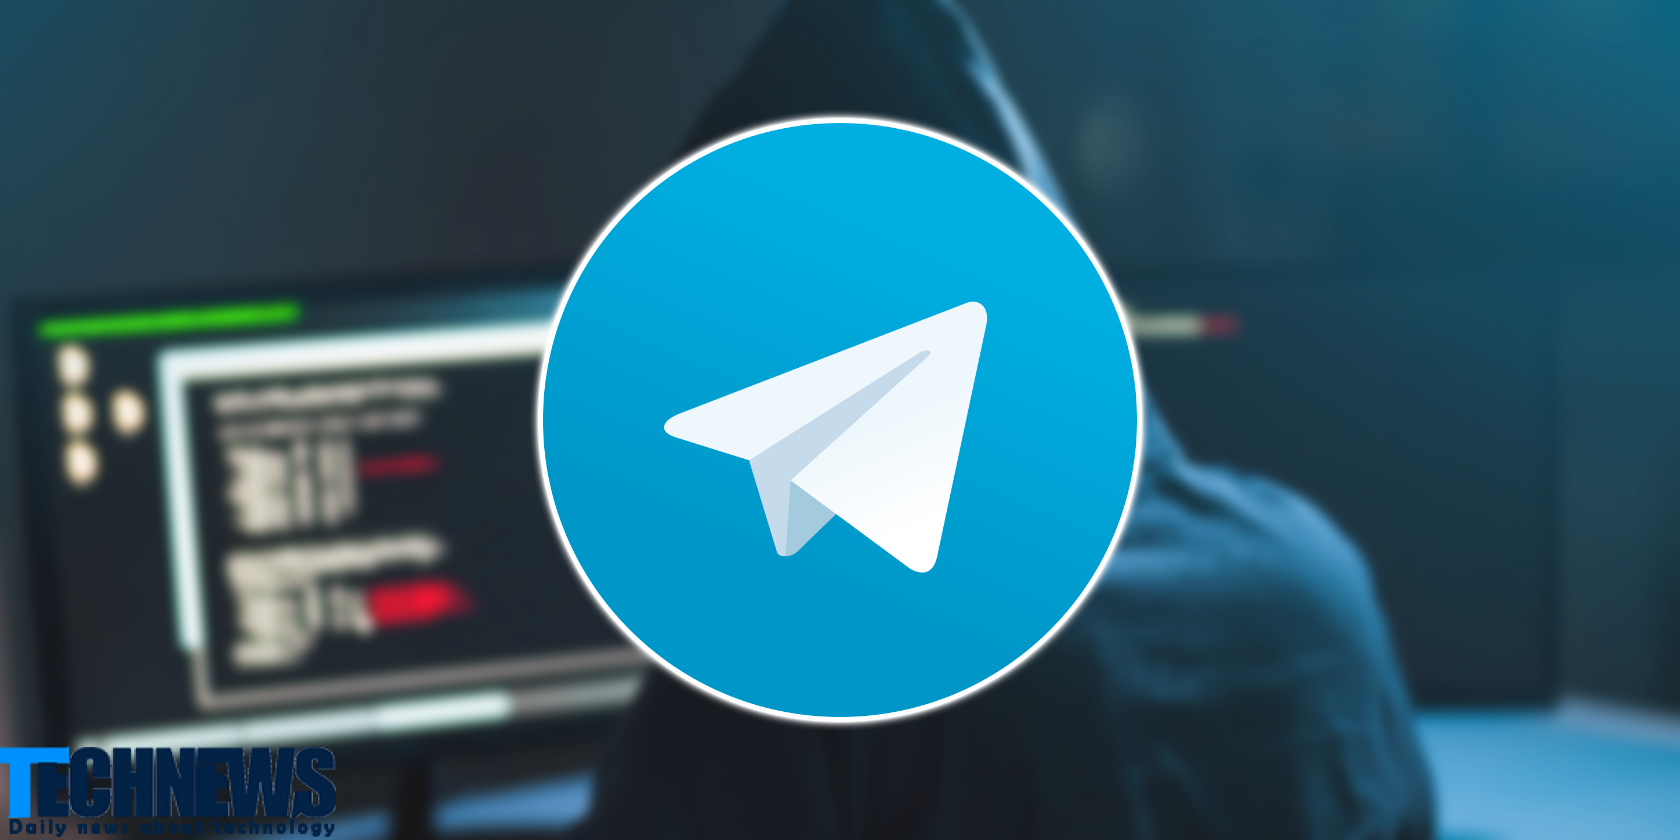 تلگرام به مکانی برای فعالیت های مجرمانه تبدیل شده است